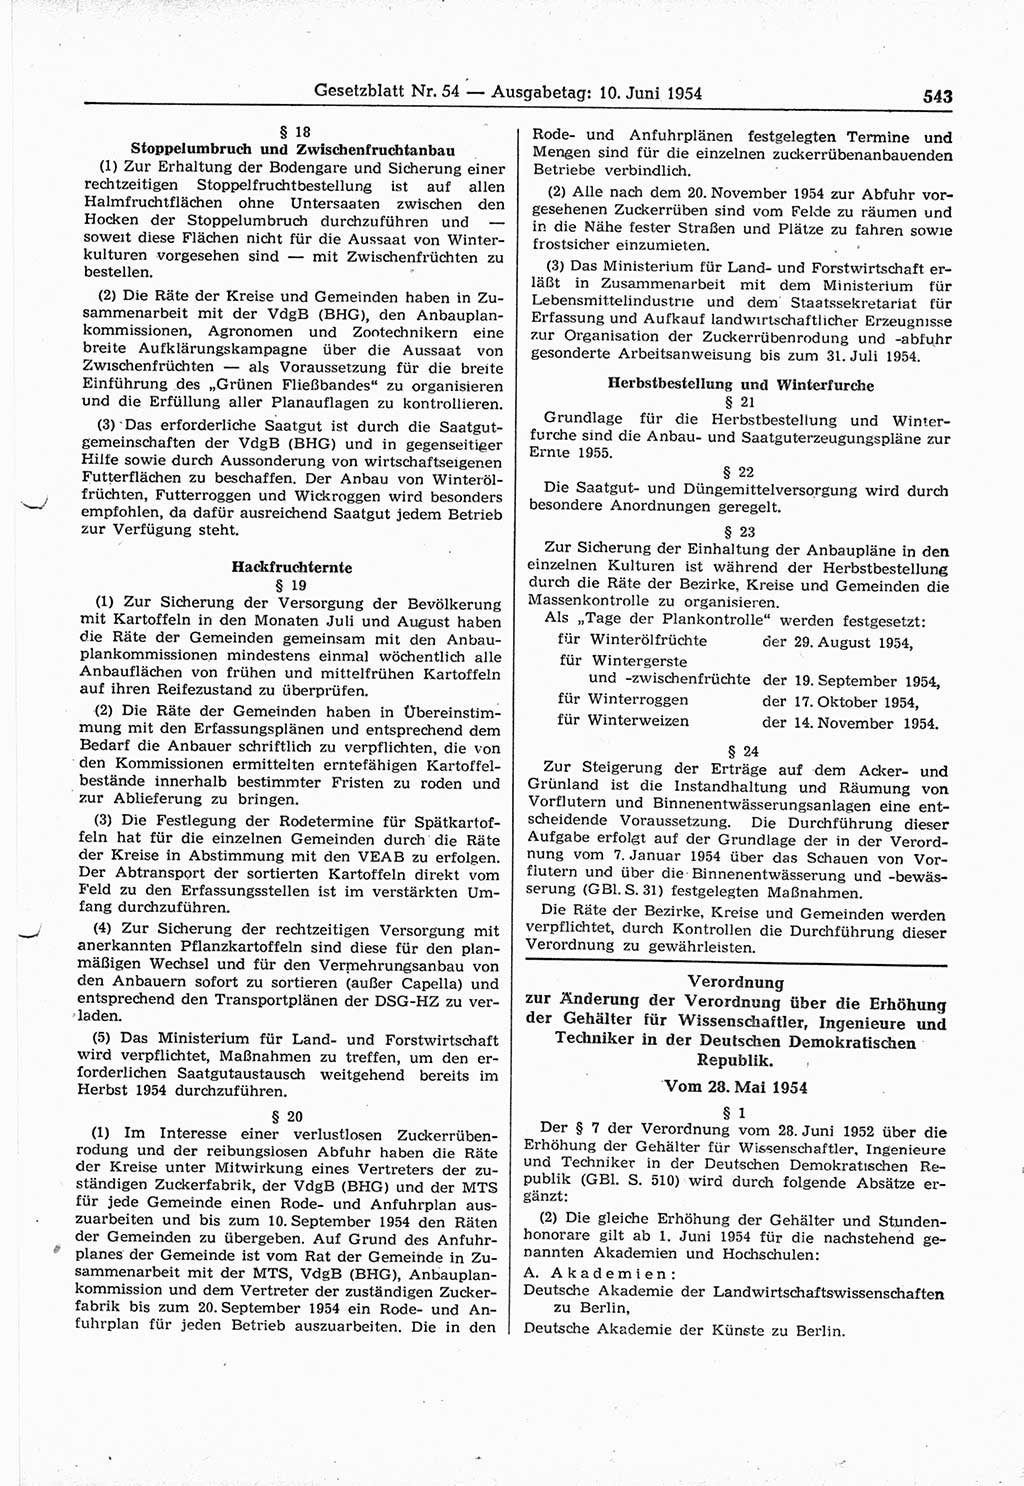 Gesetzblatt (GBl.) der Deutschen Demokratischen Republik (DDR) 1954, Seite 543 (GBl. DDR 1954, S. 543)